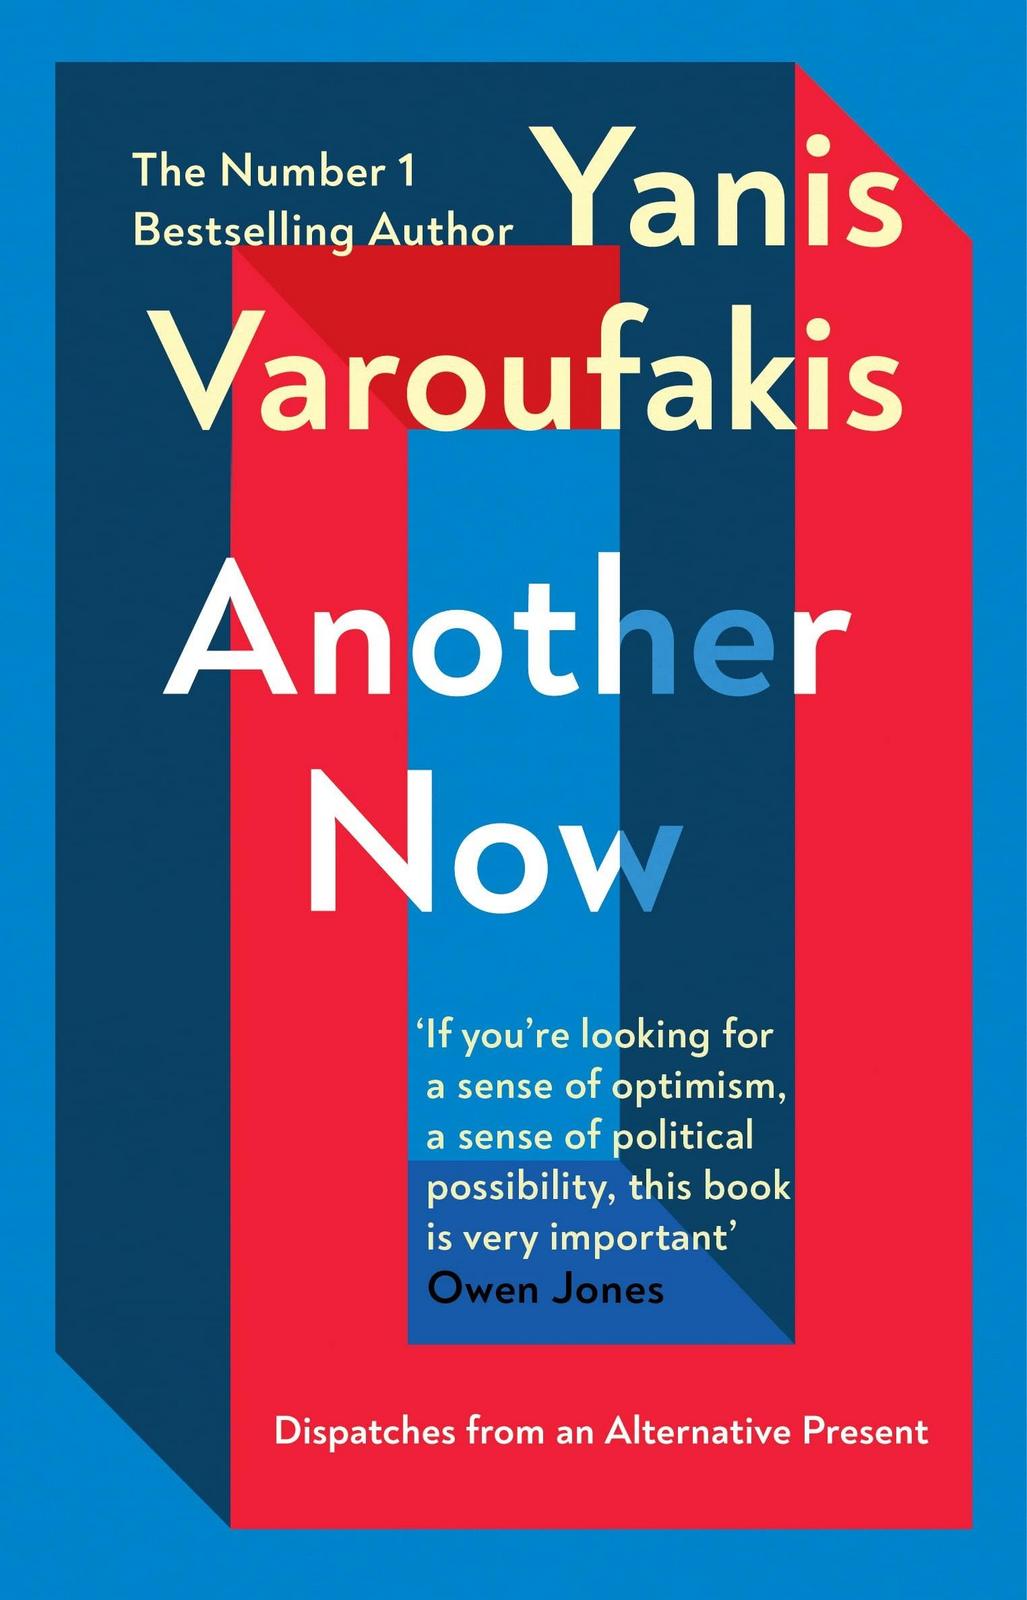 Yanis Varoufakis: Another Now (Vintage Classics)